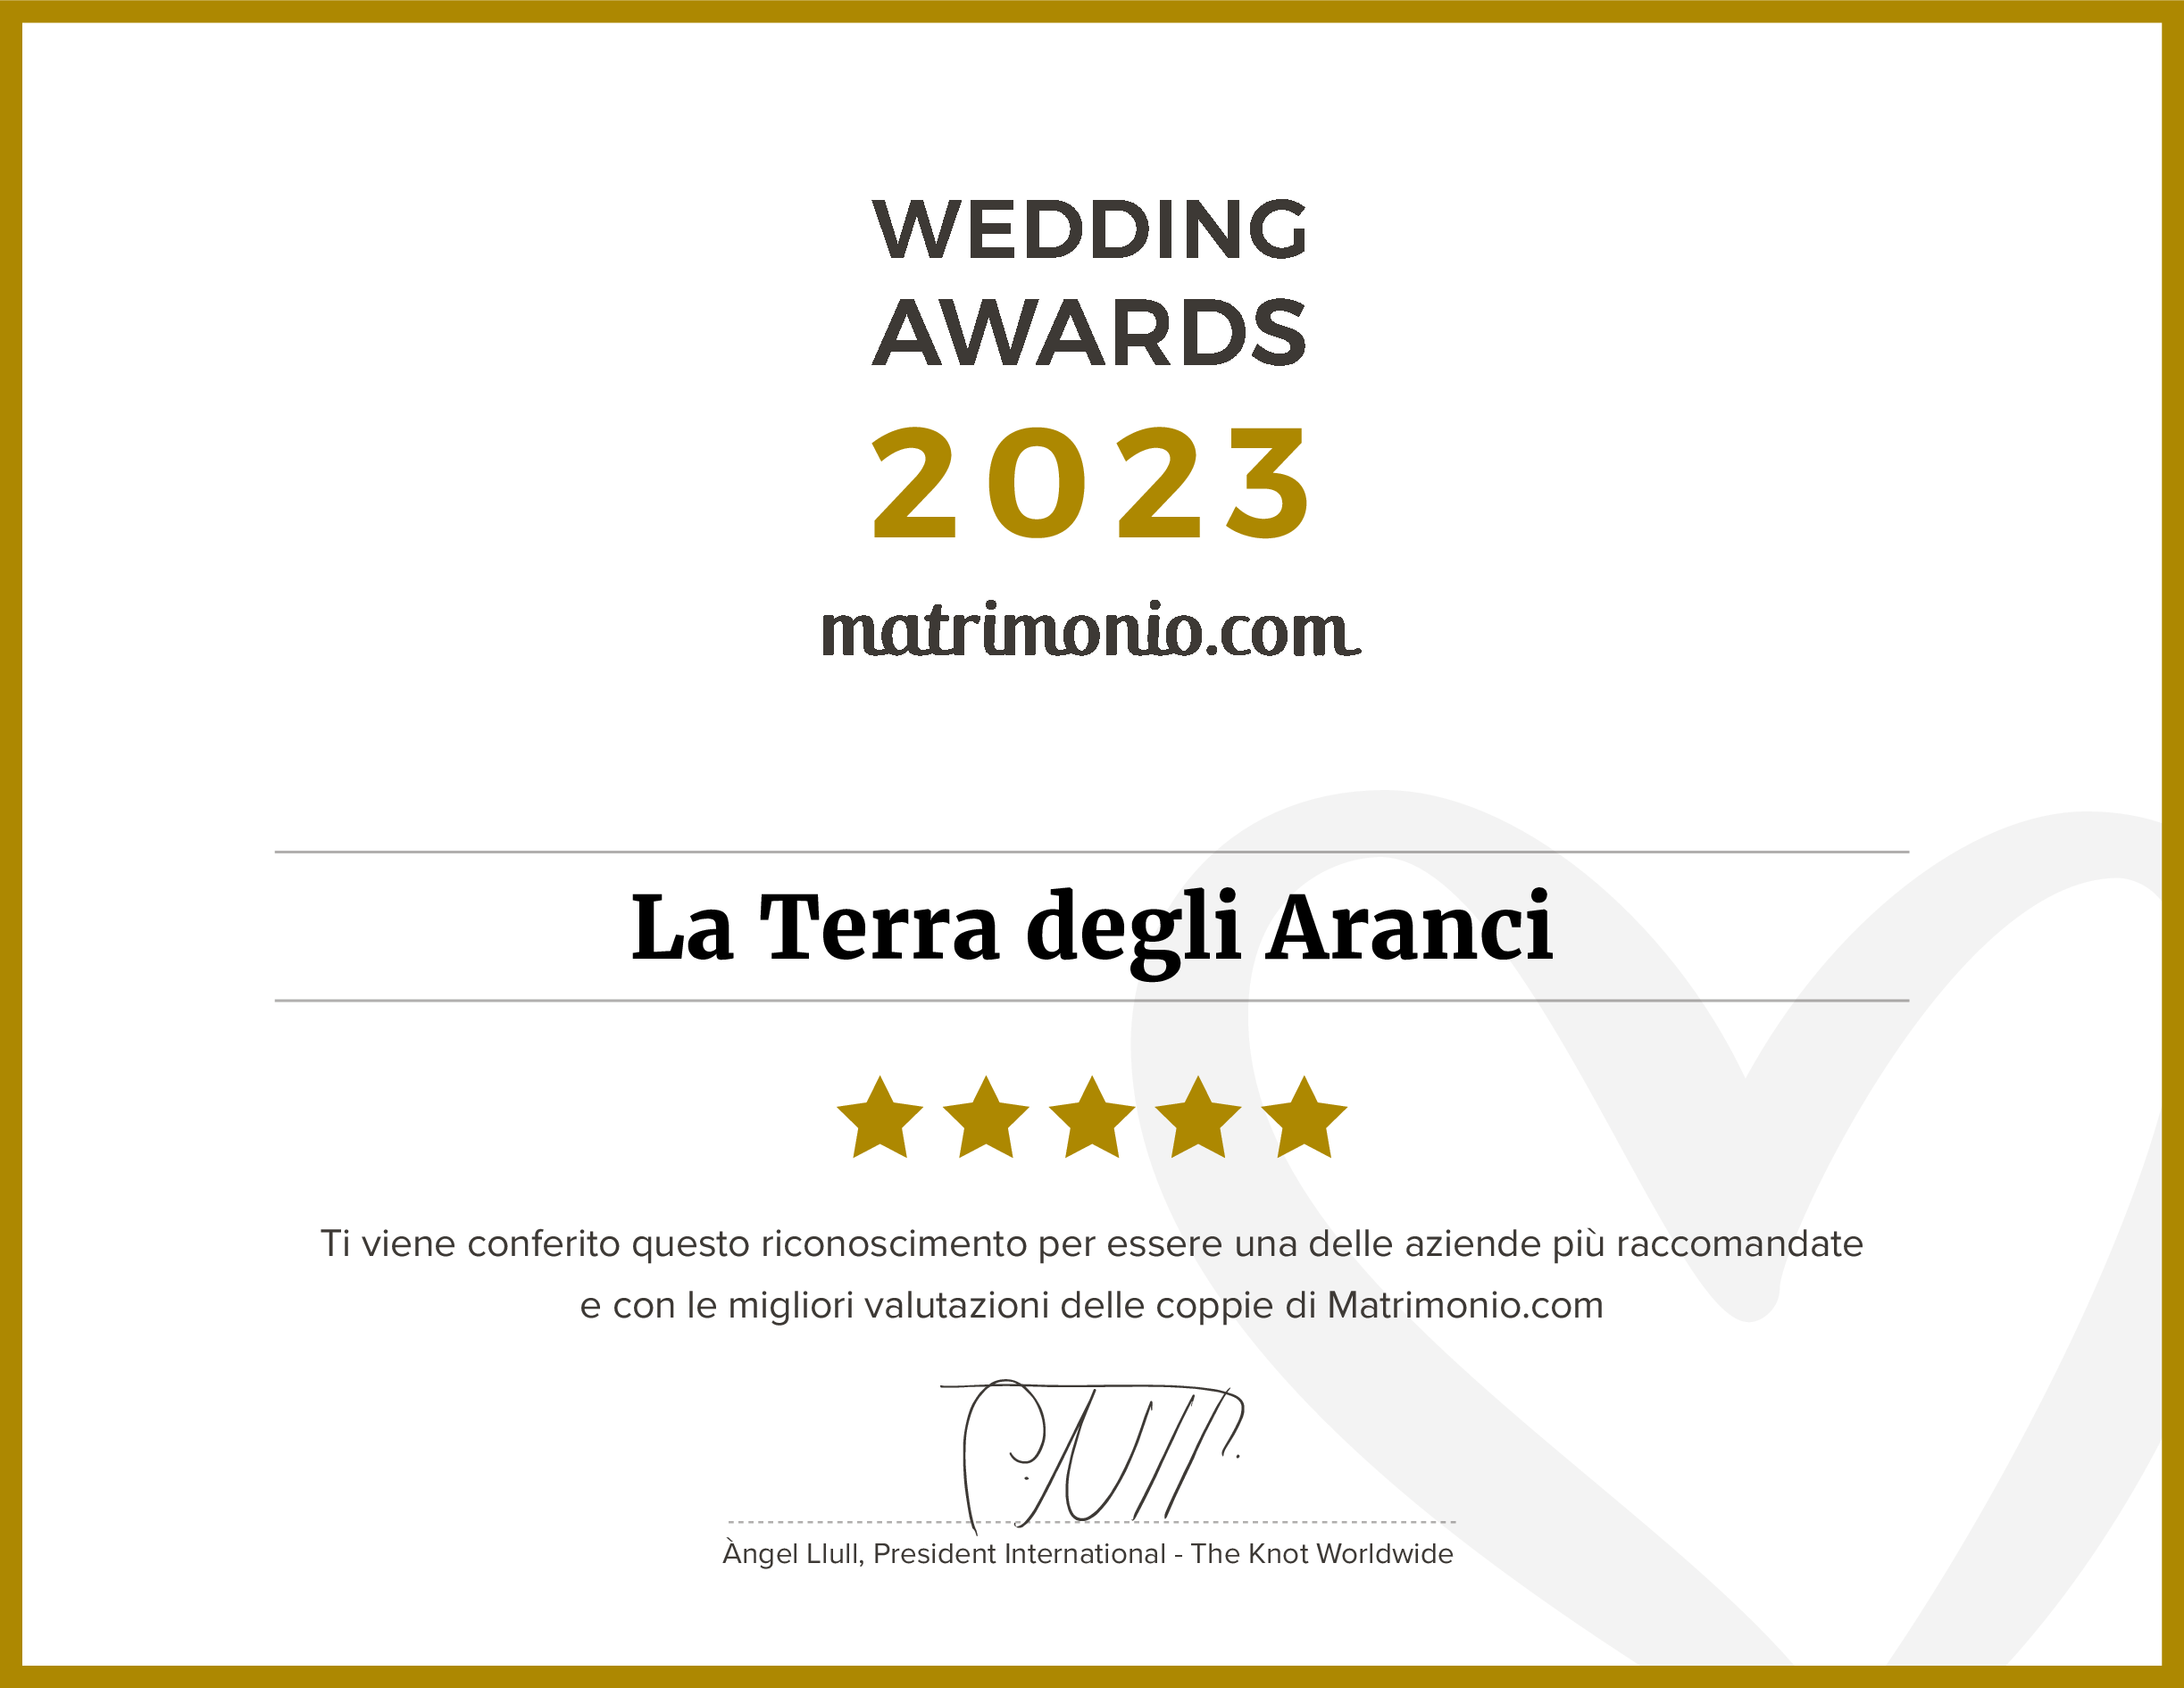 La Terra degli Aranci premiata con il Wedding Award 2023  